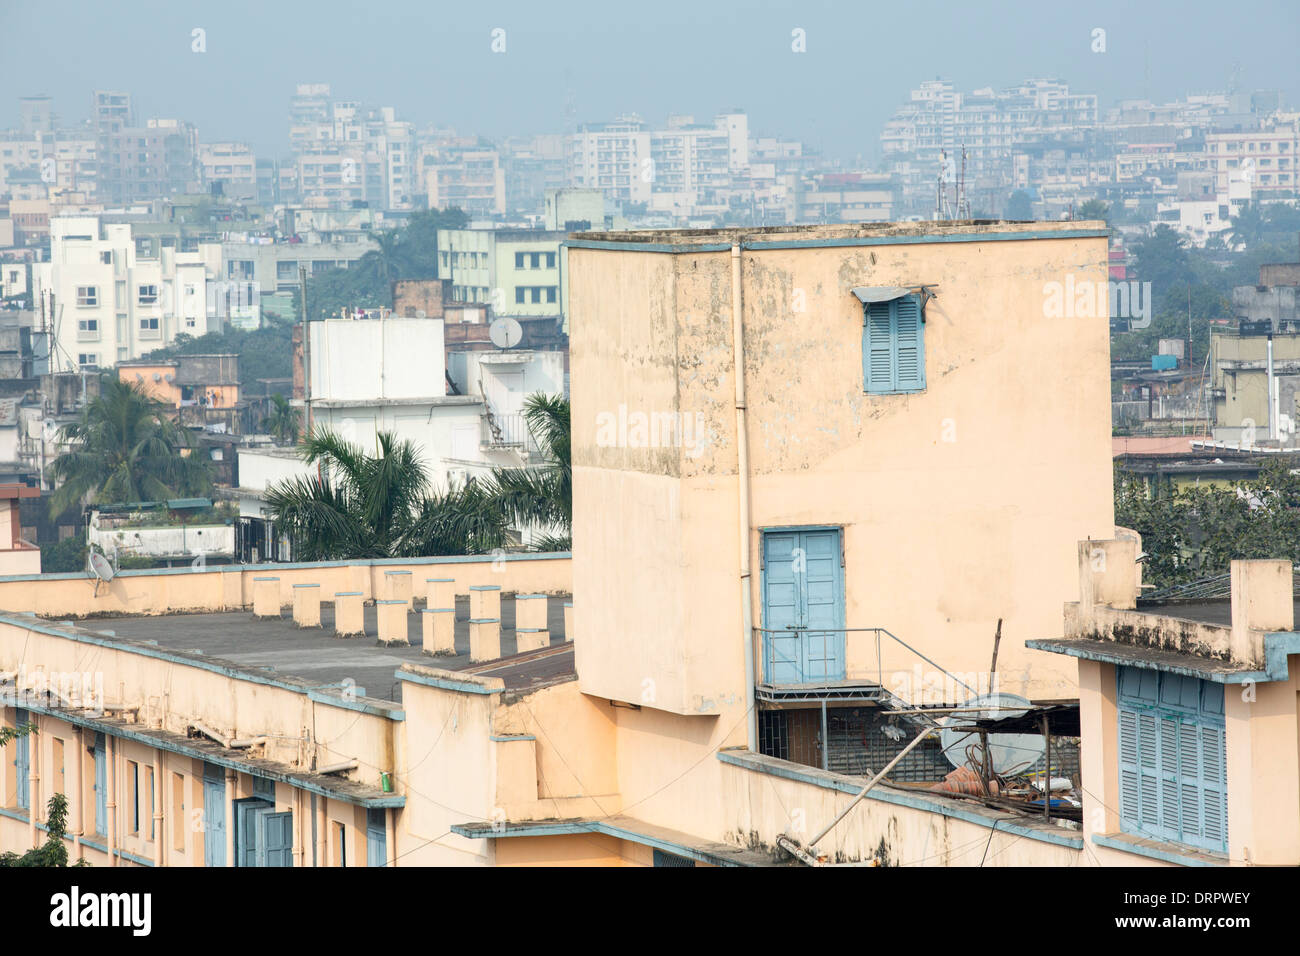 Schlechte Luftqualität und Umweltverschmutzung in Kalkutta, Indien. Stockfoto